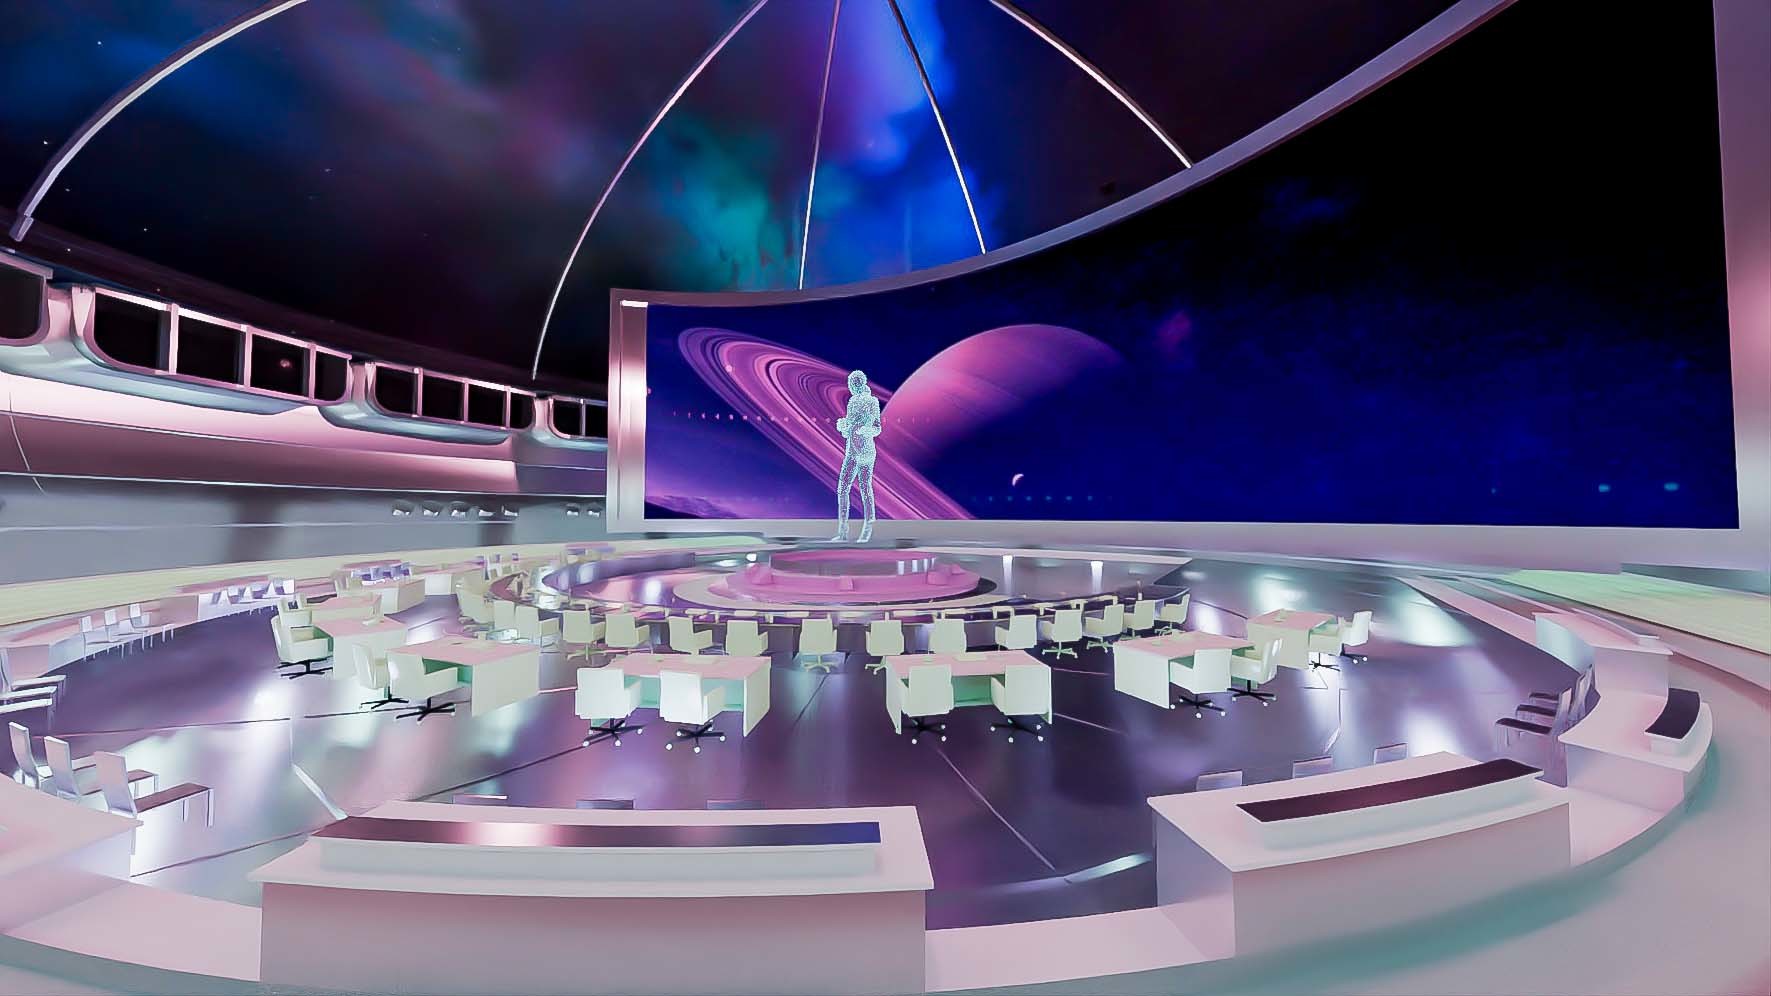 这是一张虚拟现实或科幻场景的图片，中心有人影，周围是现代化控制台和屏幕，背景似乎是太空环境。